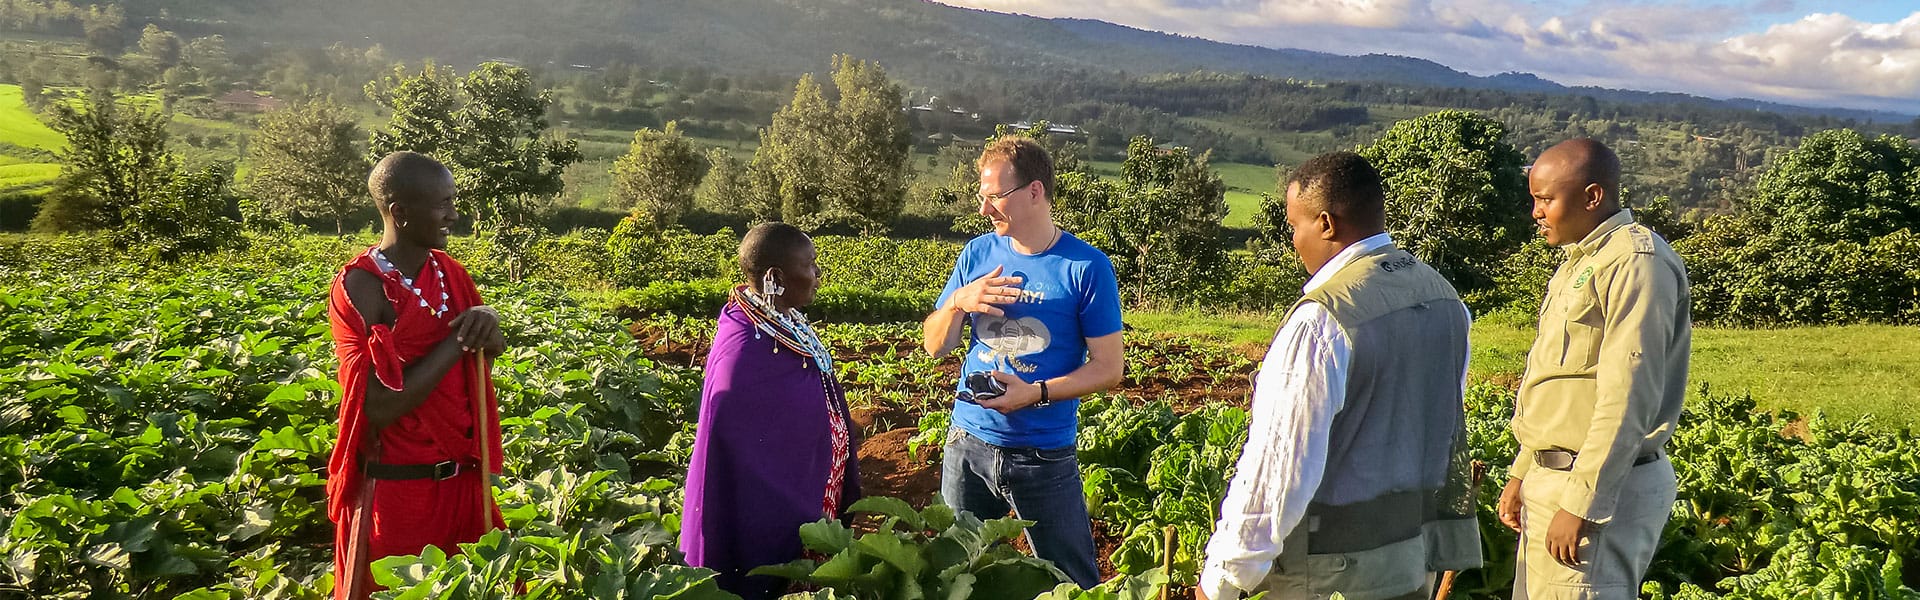 Ingo mit lokalen Bauern in Tansania |  Stefanie Mnkel / Chamleon